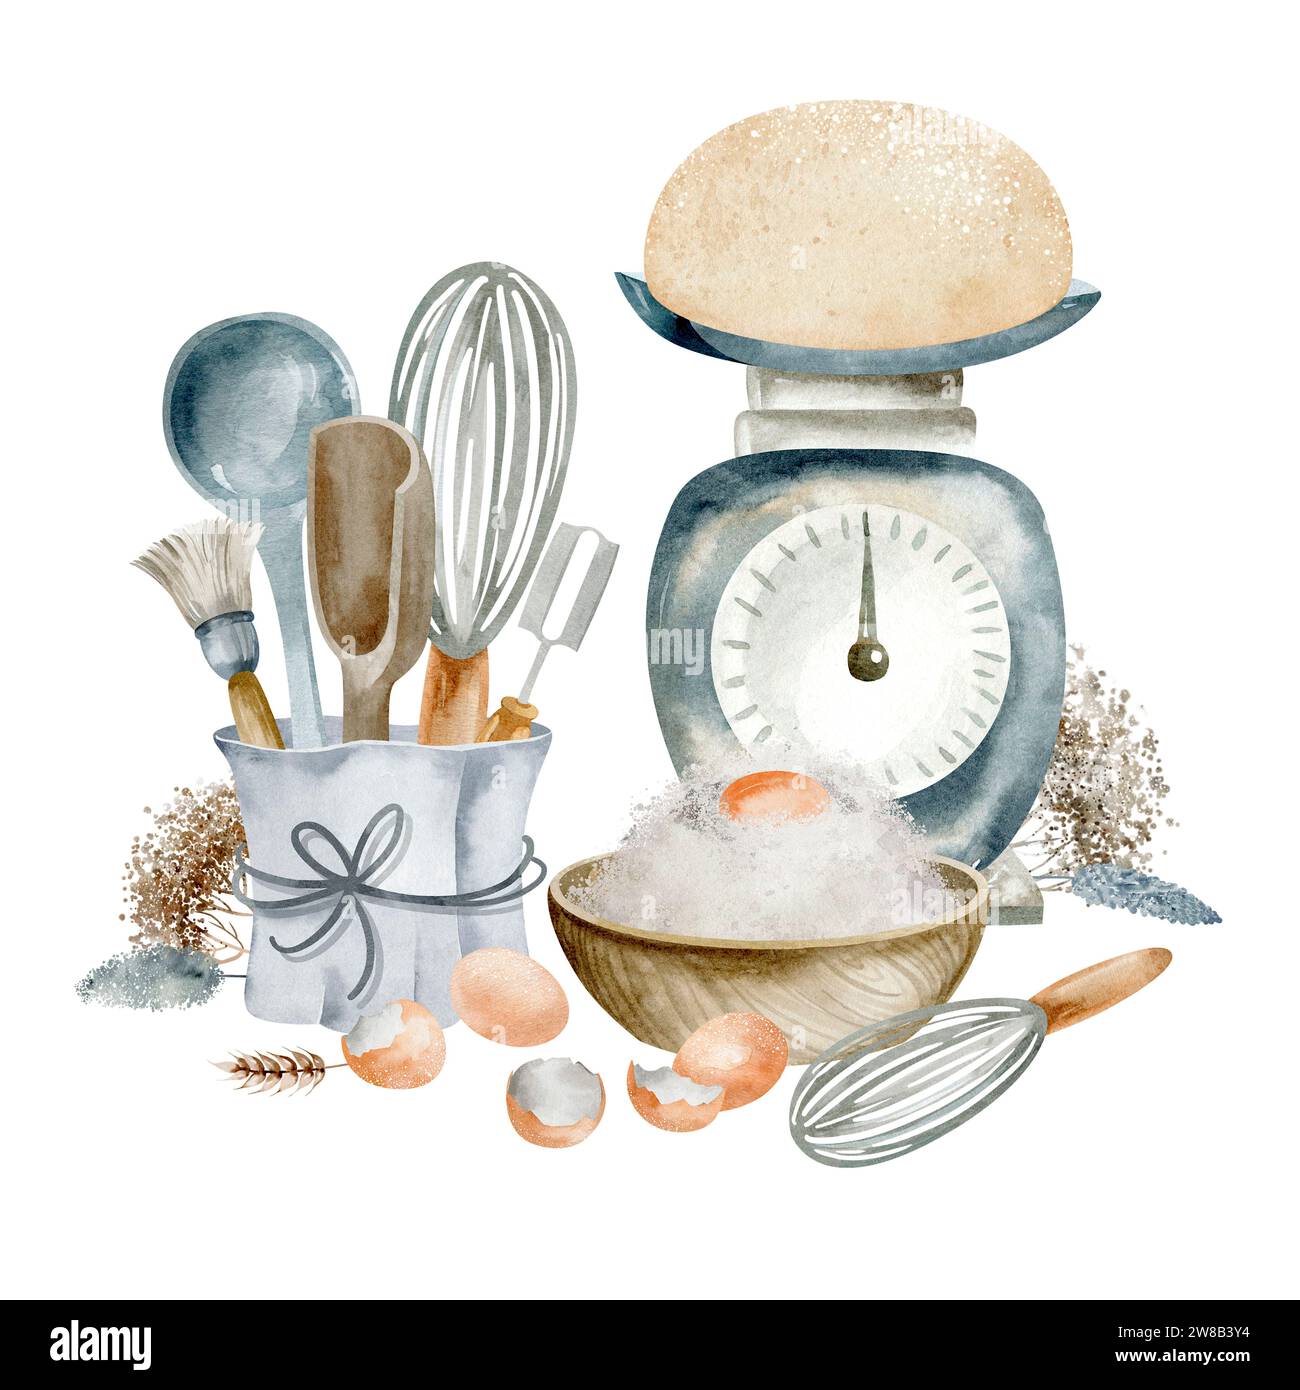 Aquarelle nature morte lumineuse avec divers plats et ingrédients de cuisson sur un fond blanc. Banque D'Images